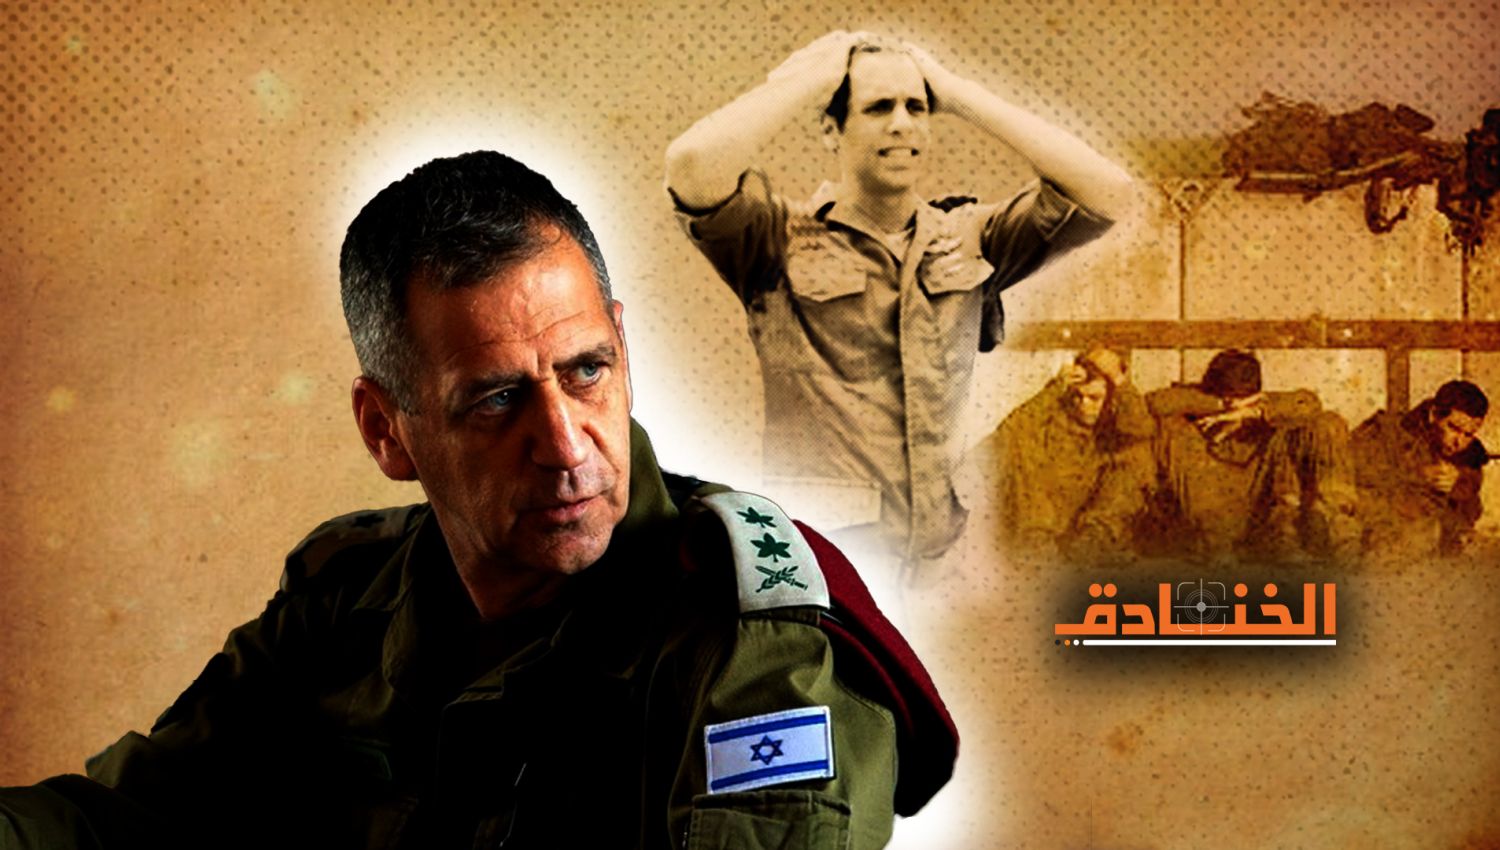 هآرتس: كوخافي هو أحد رؤساء الأركان الضعفاء جدا في تاريخ "إسرائيل"